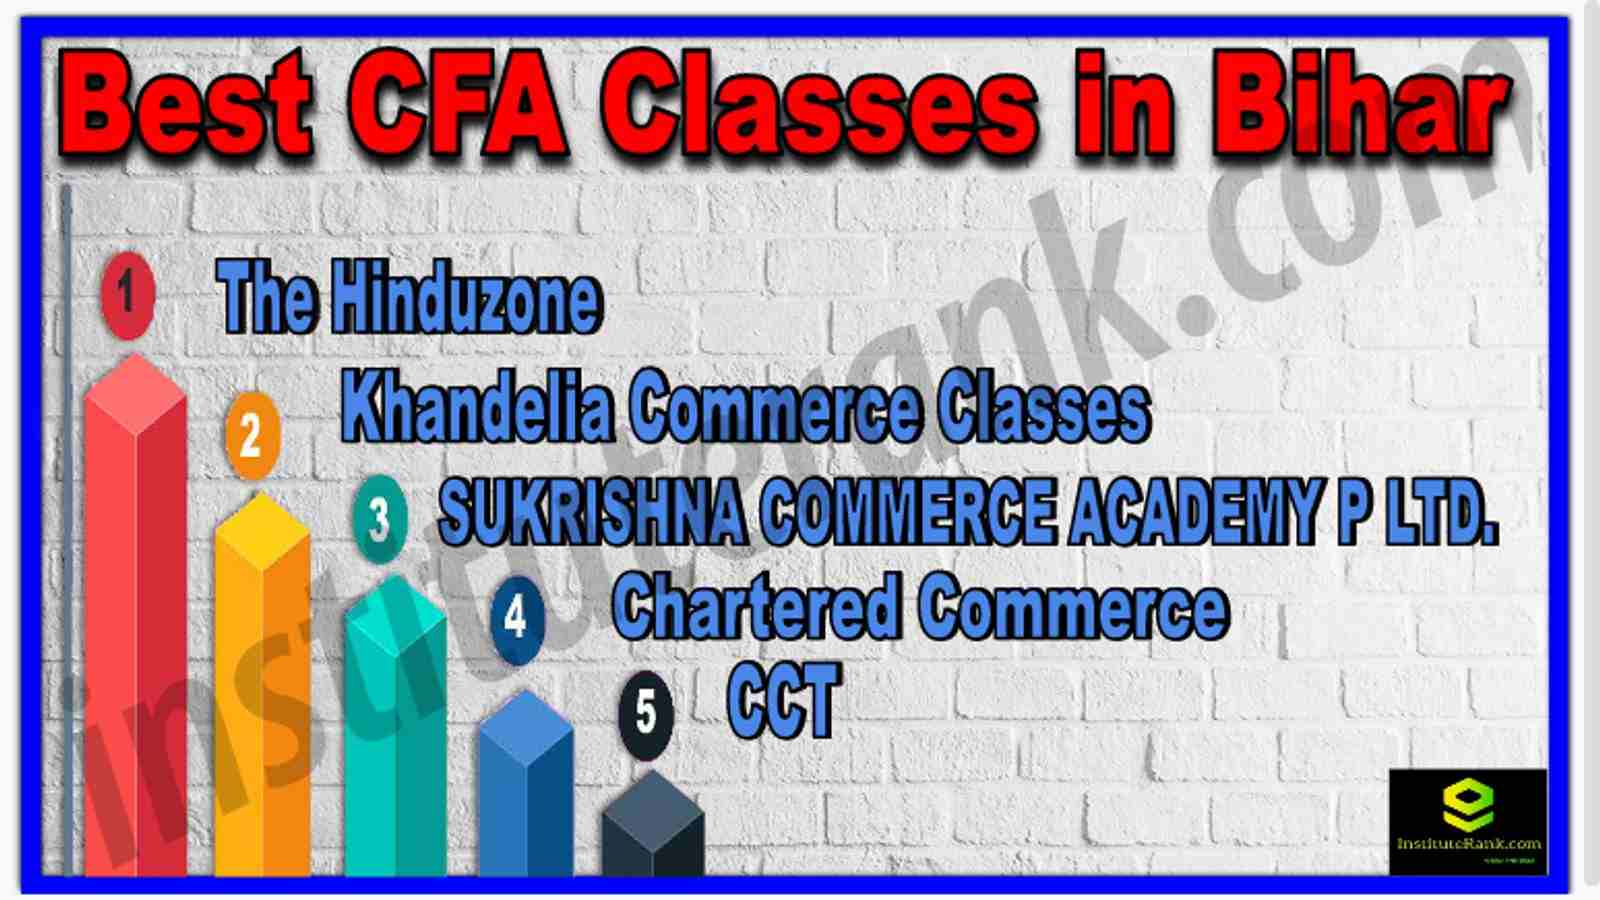 Best CFA Classes in Bihar